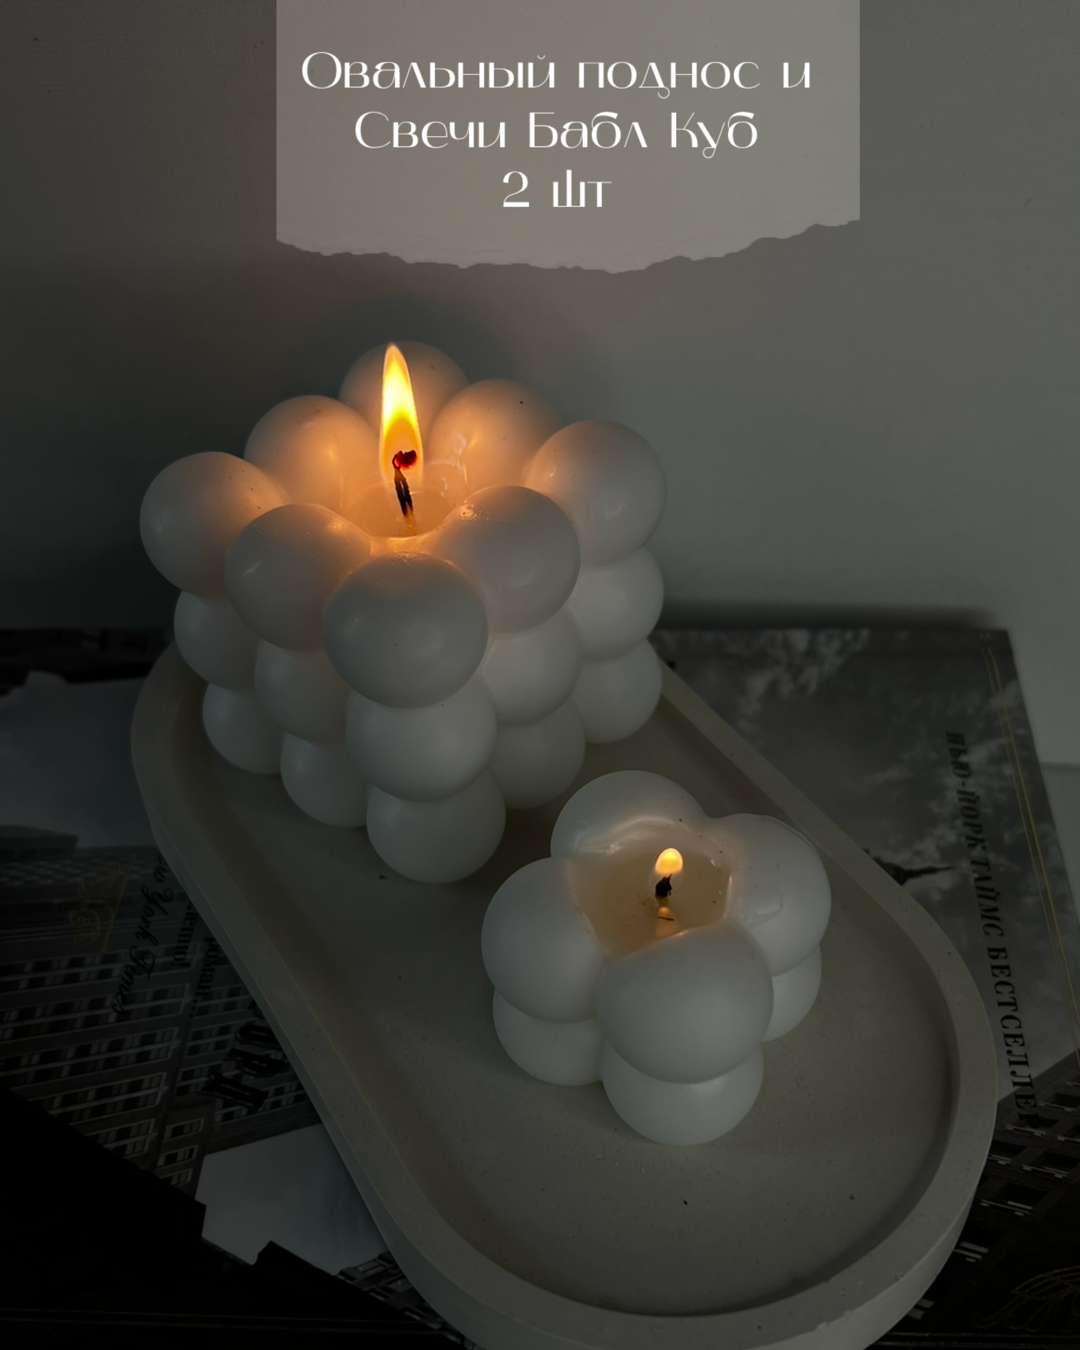 Набор свечей "Бабл Куб" большая и мини на подставке